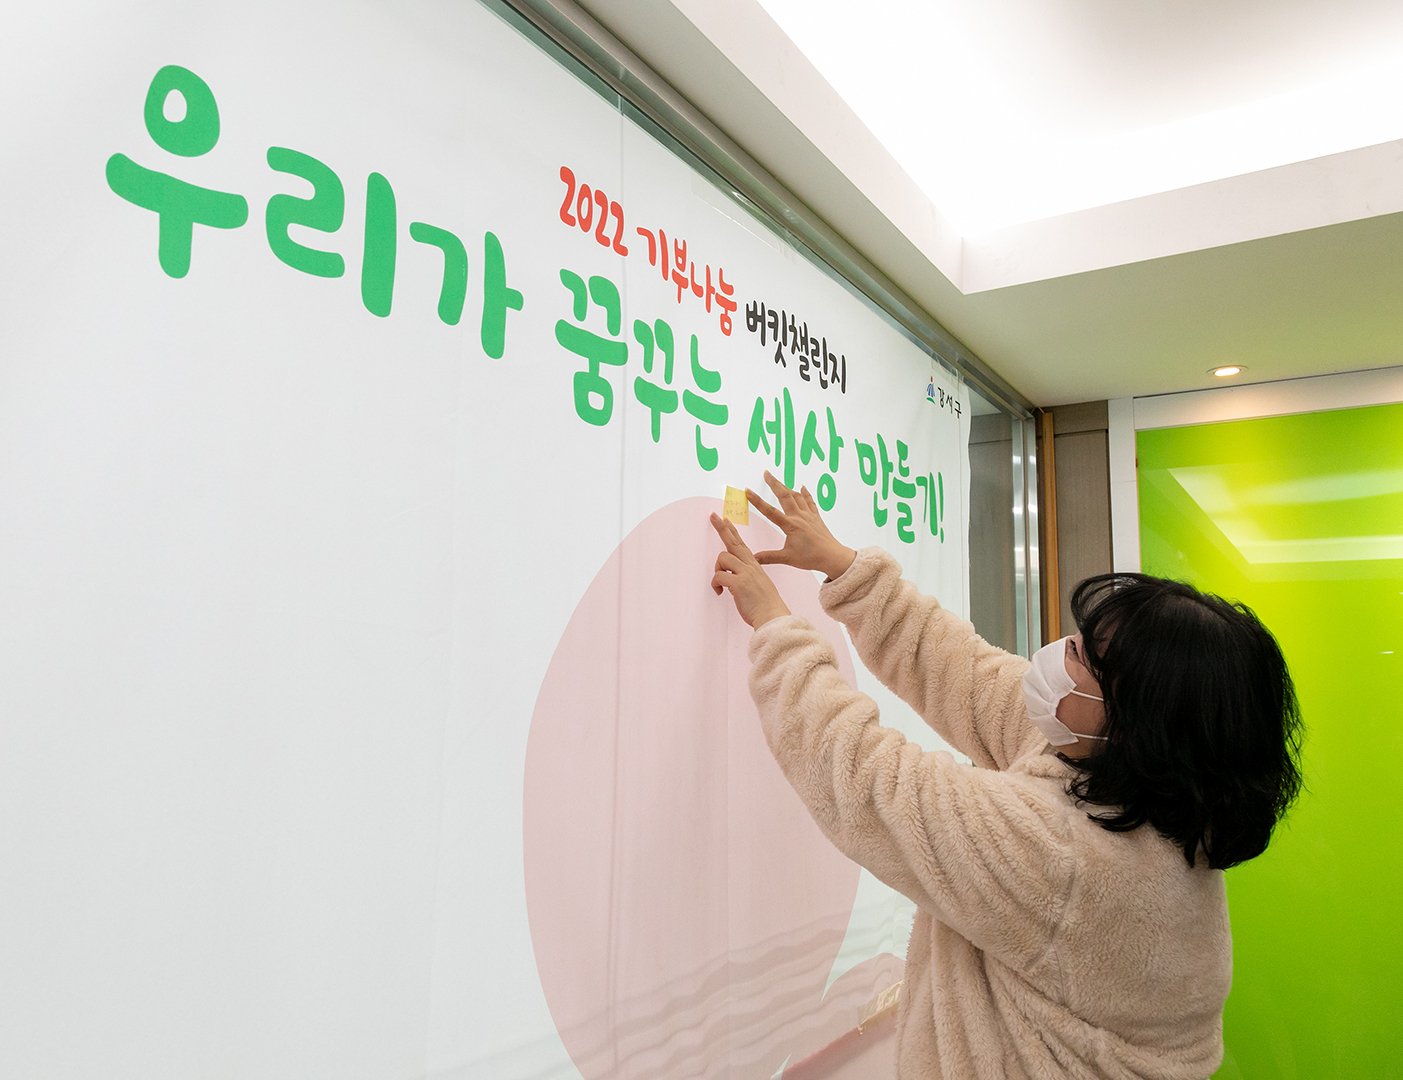 서울 강서구가 내년 2월까지 진행하는 기부 나눔 버킷 챌린지 참가자가 현판에 희망 메시지를 붙이는 모습. 강서구 제공 